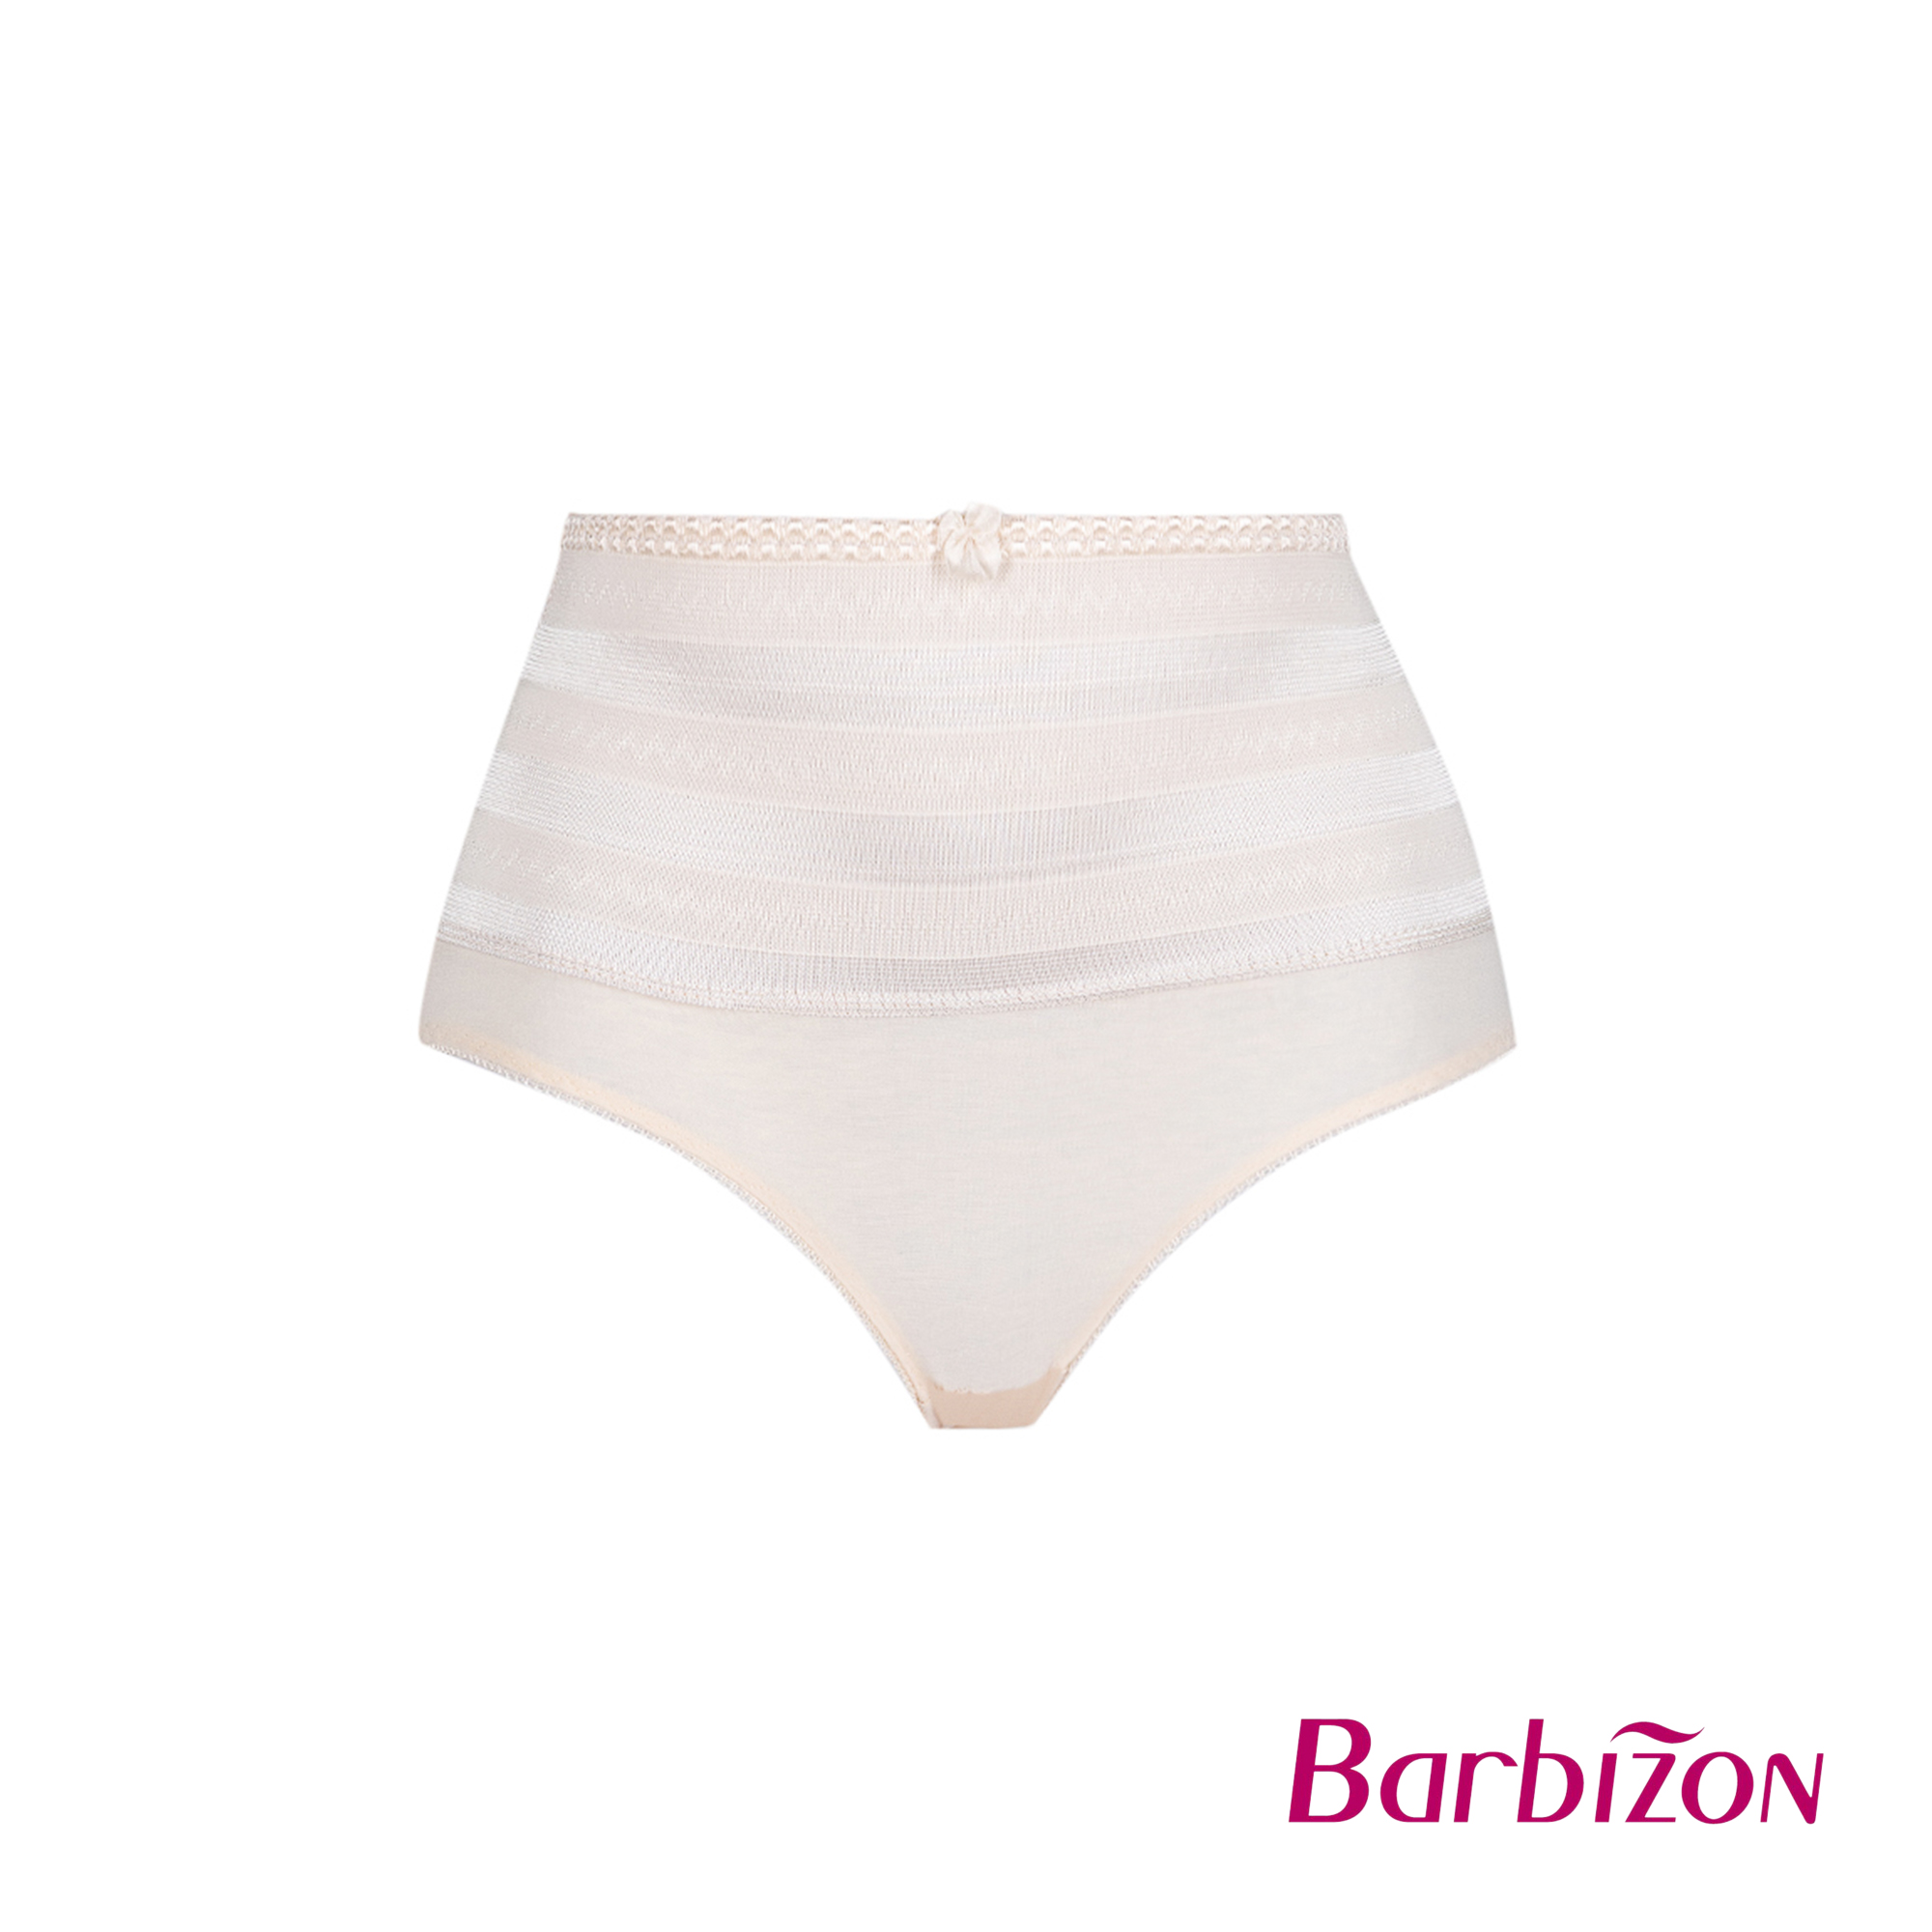 Barbizon Panty Girdle Shapewear Women Underwear